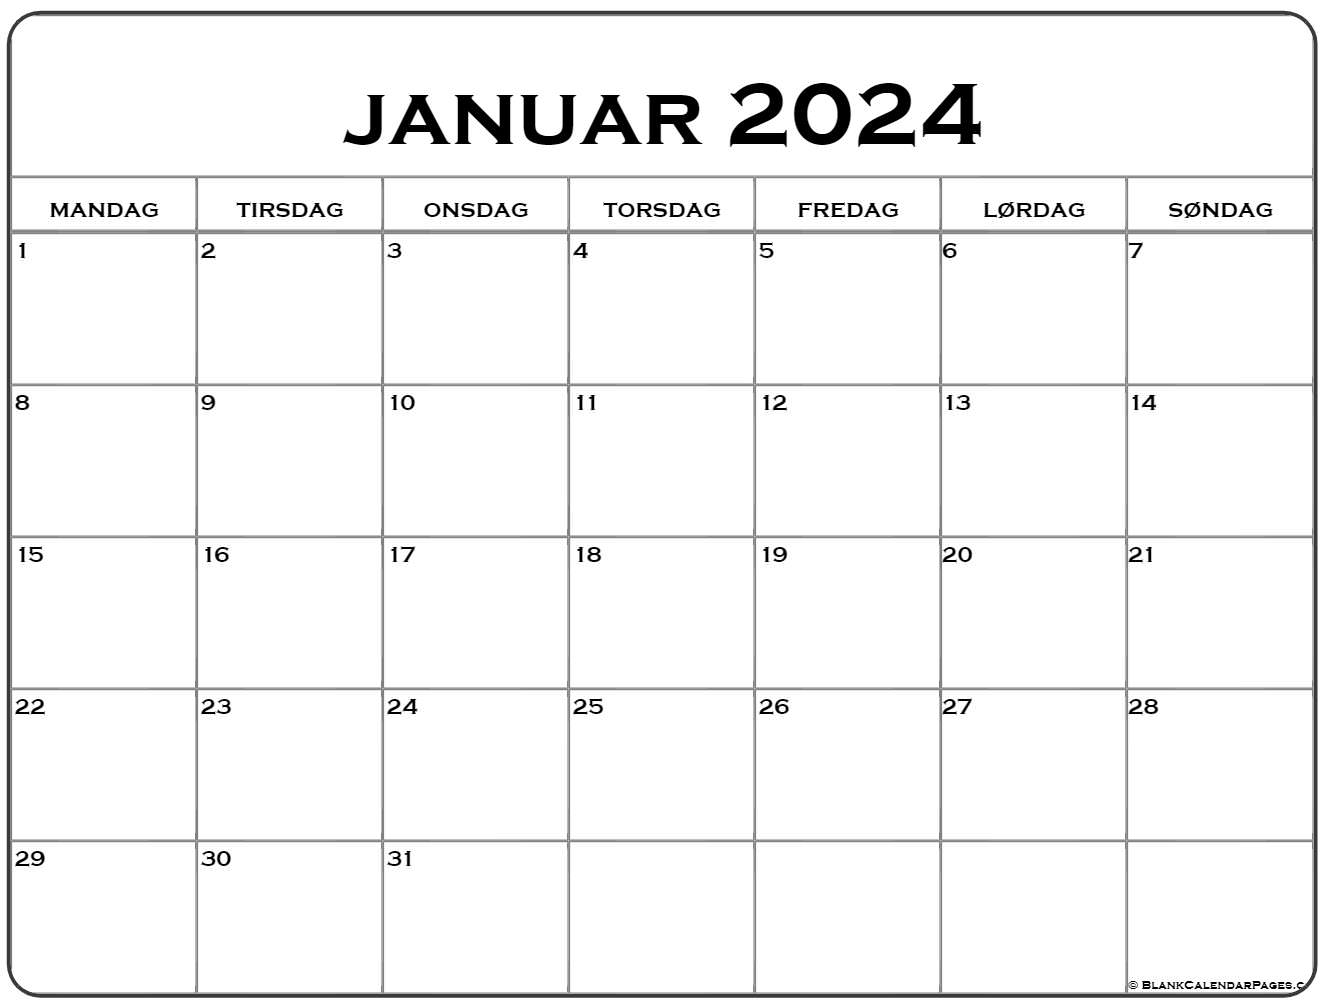 2022 kalender Dansk | januar